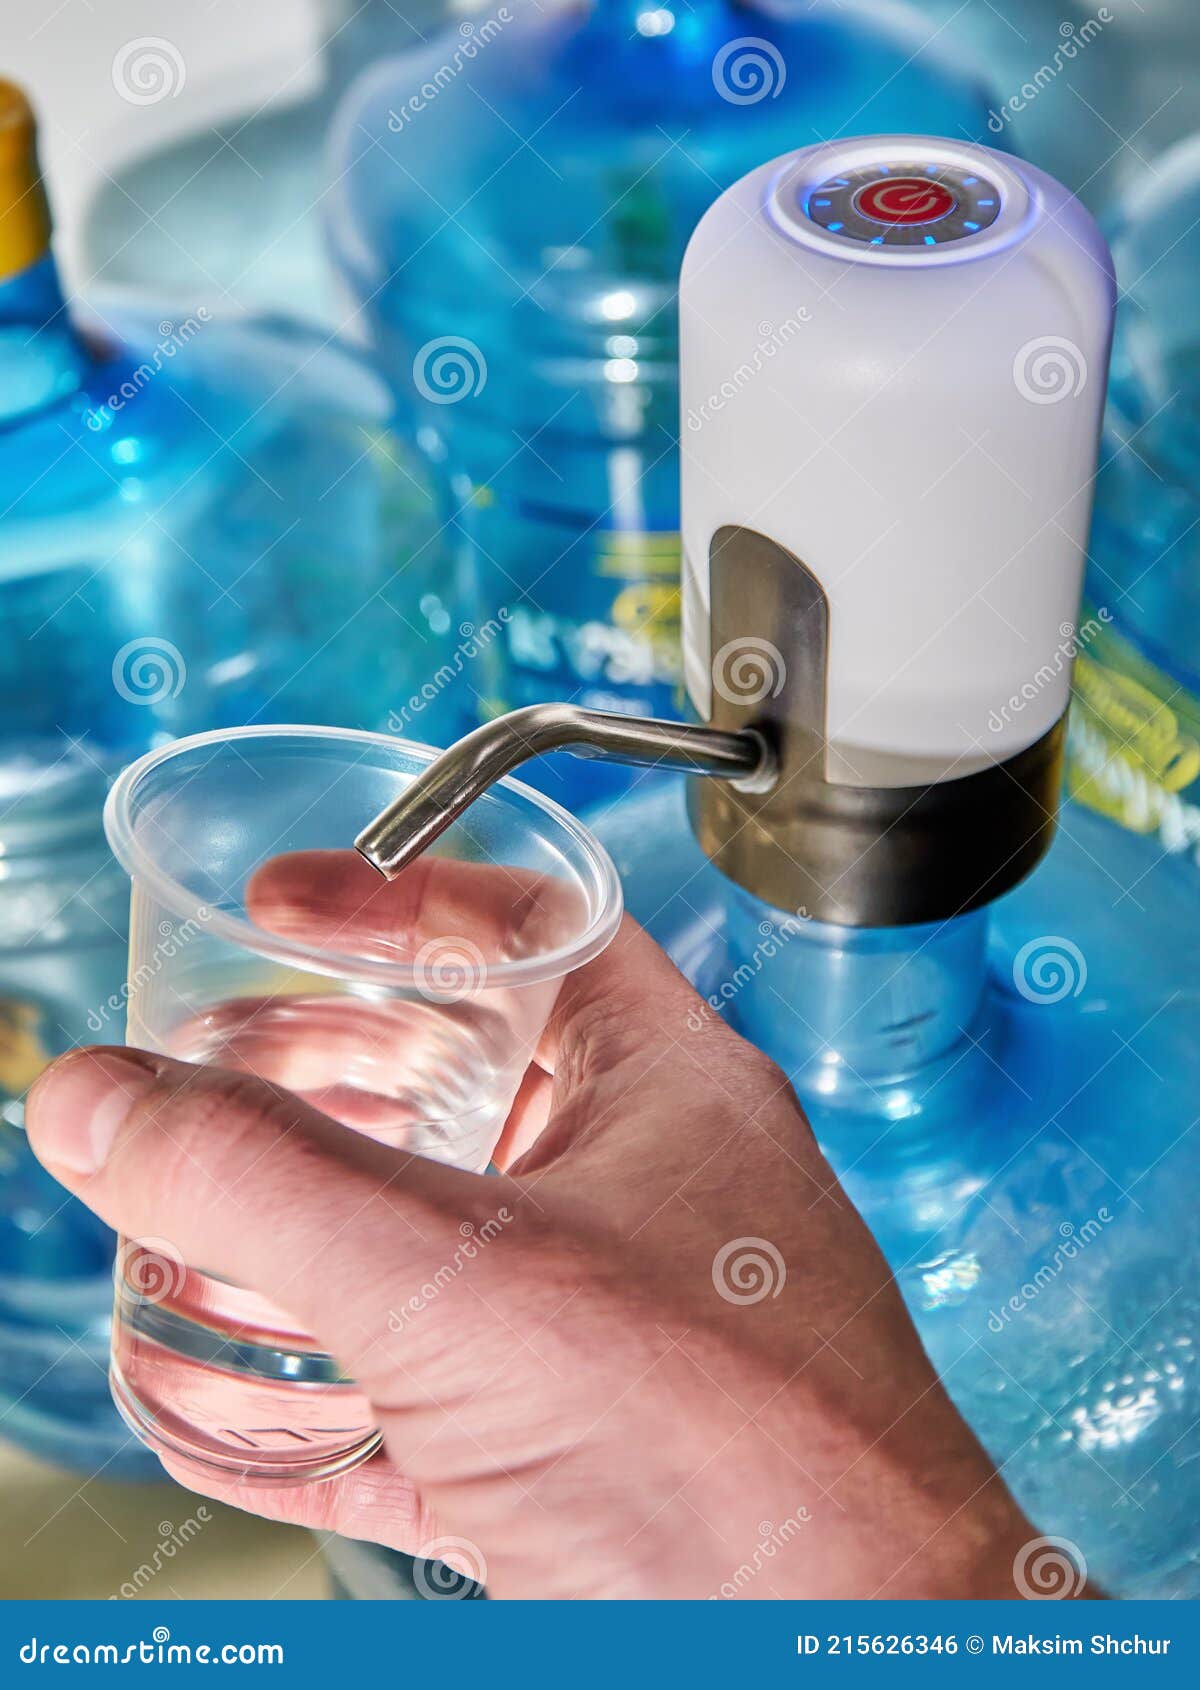 https://thumbs.dreamstime.com/z/elektrische-wasserpumpe-menschliches-gie%C3%9Fwasser-tragbare-pumpe-f%C3%BCr-wasserflaschen-ein-mann-gie%C3%9Ft-wasser-eine-transparente-215626346.jpg